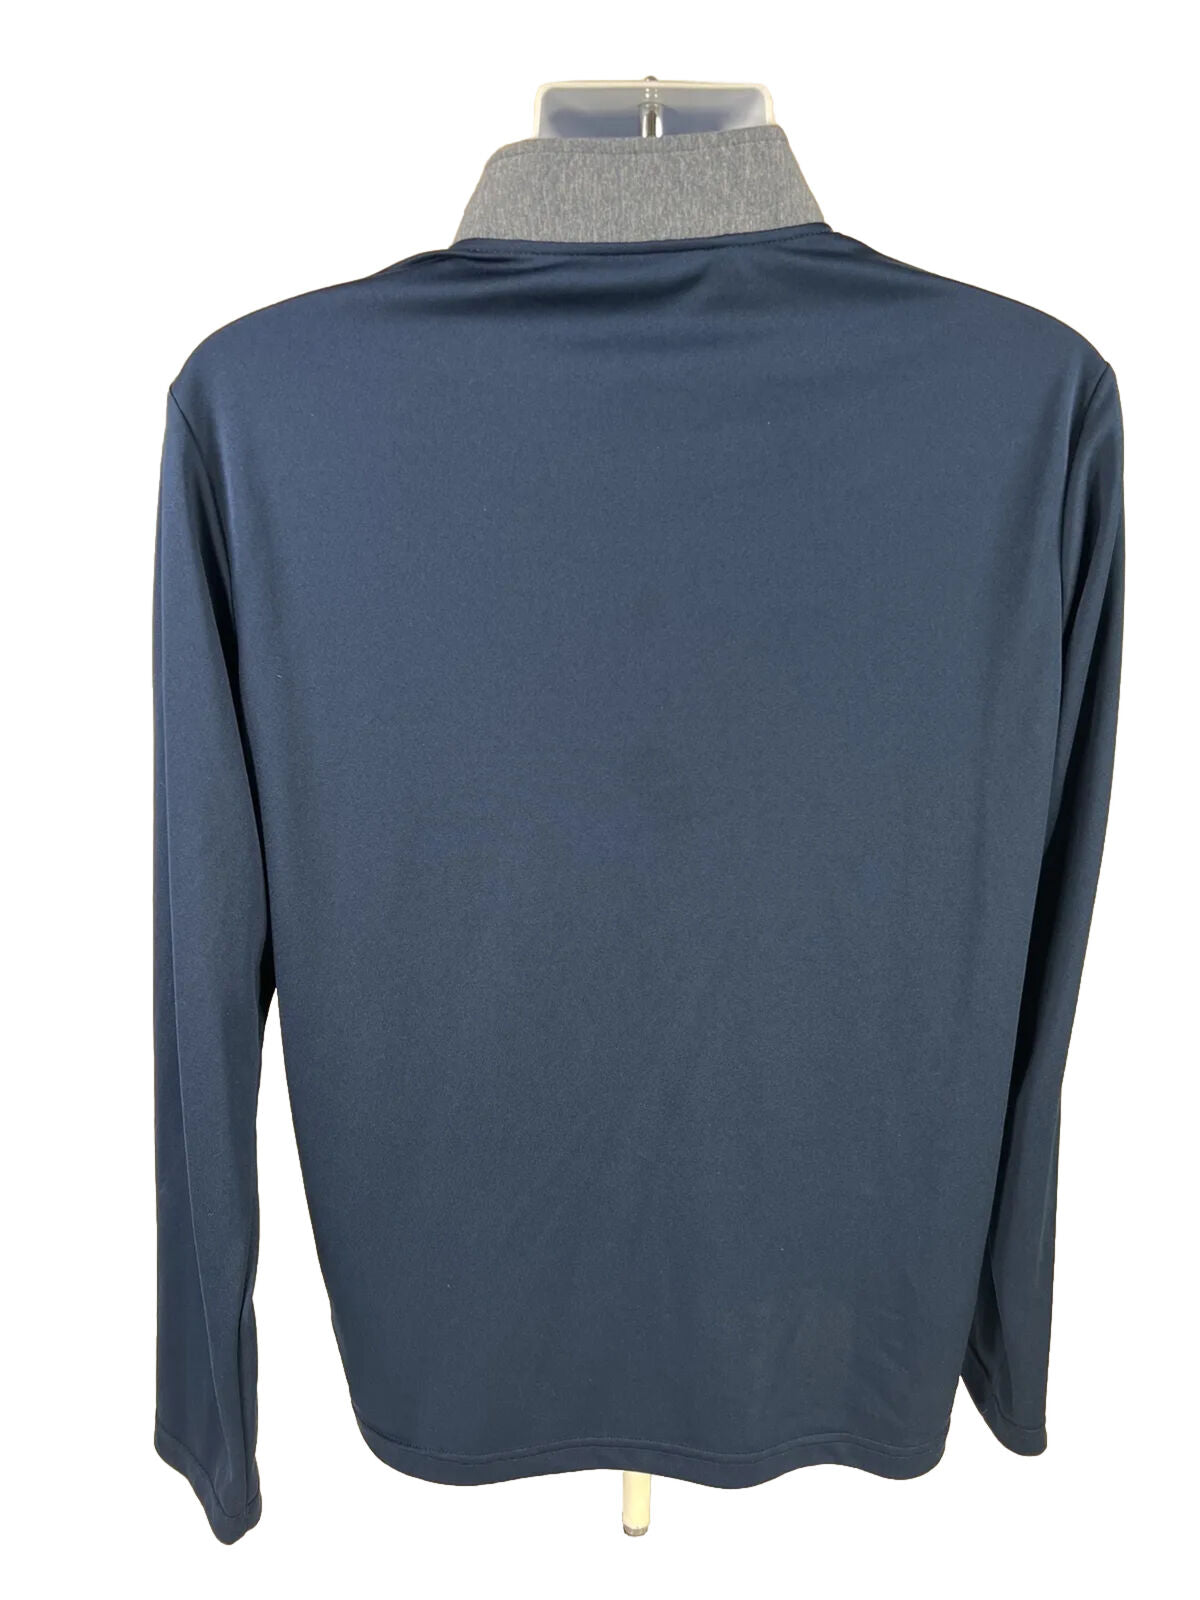 Adidas Camiseta deportiva de manga larga azul con cremallera de 1/4 para hombre - M